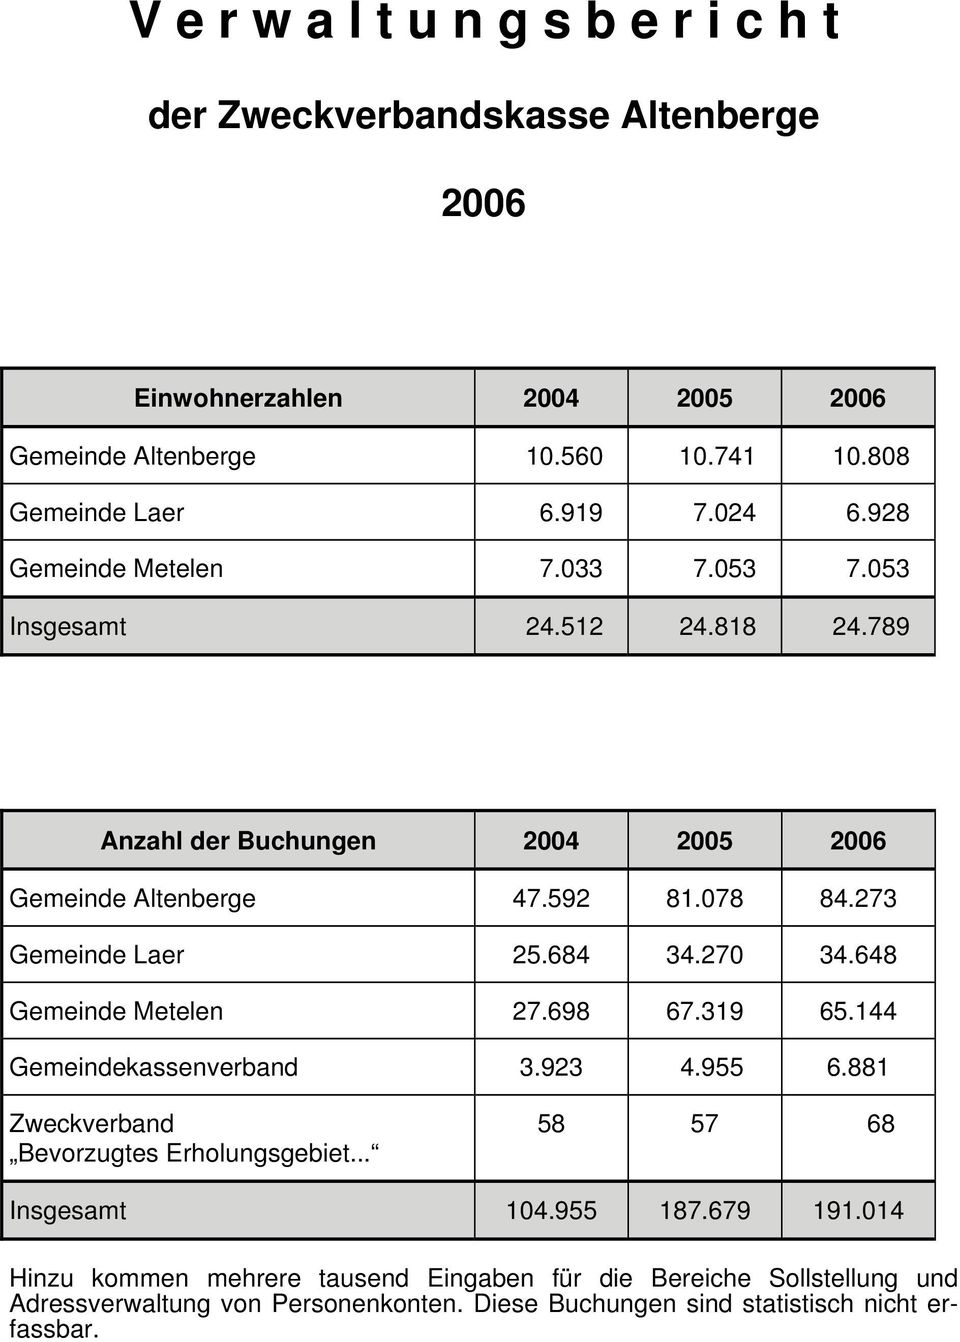 648 Gemeinde Metelen 27.698 67.319 65.144 Gemeindekassenverband 3.923 4.955 6.881 Zweckverband Bevorzugtes Erholungsgebiet... 58 57 68 Insgesamt 104.955 187.